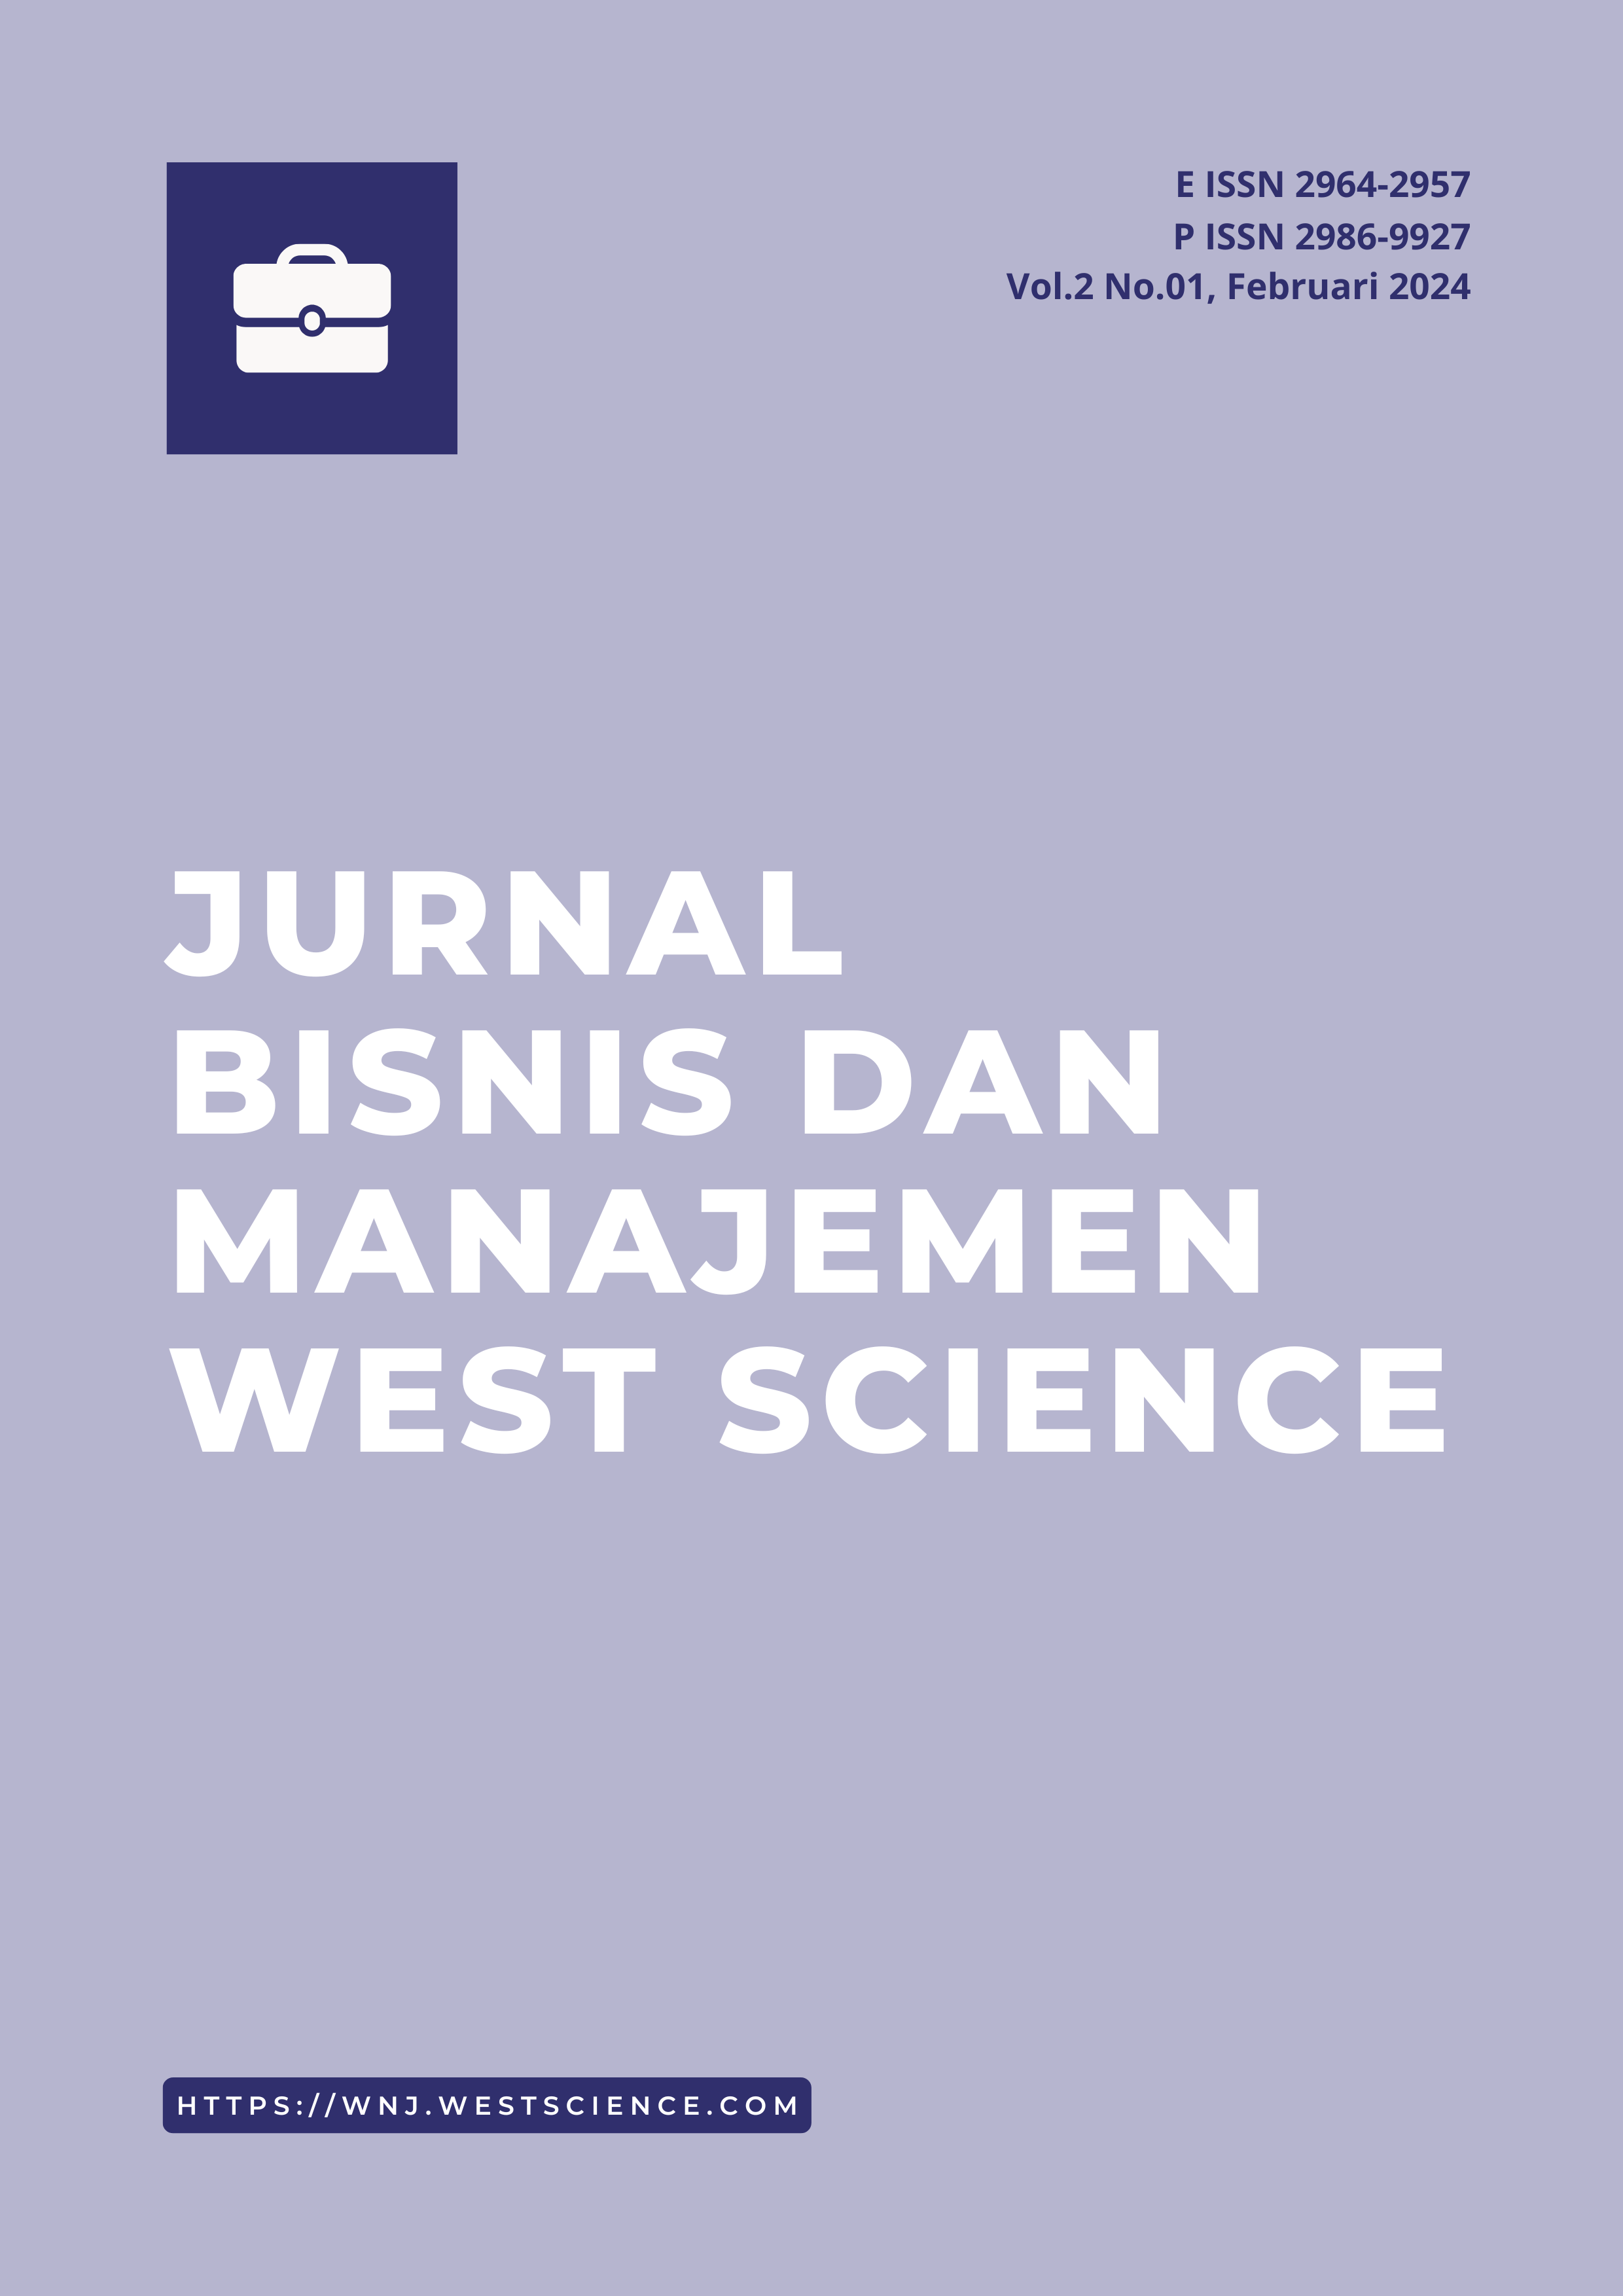 					Lihat Vol 3 No 01 (2024): Jurnal Bisnis dan Manajemen West Science
				